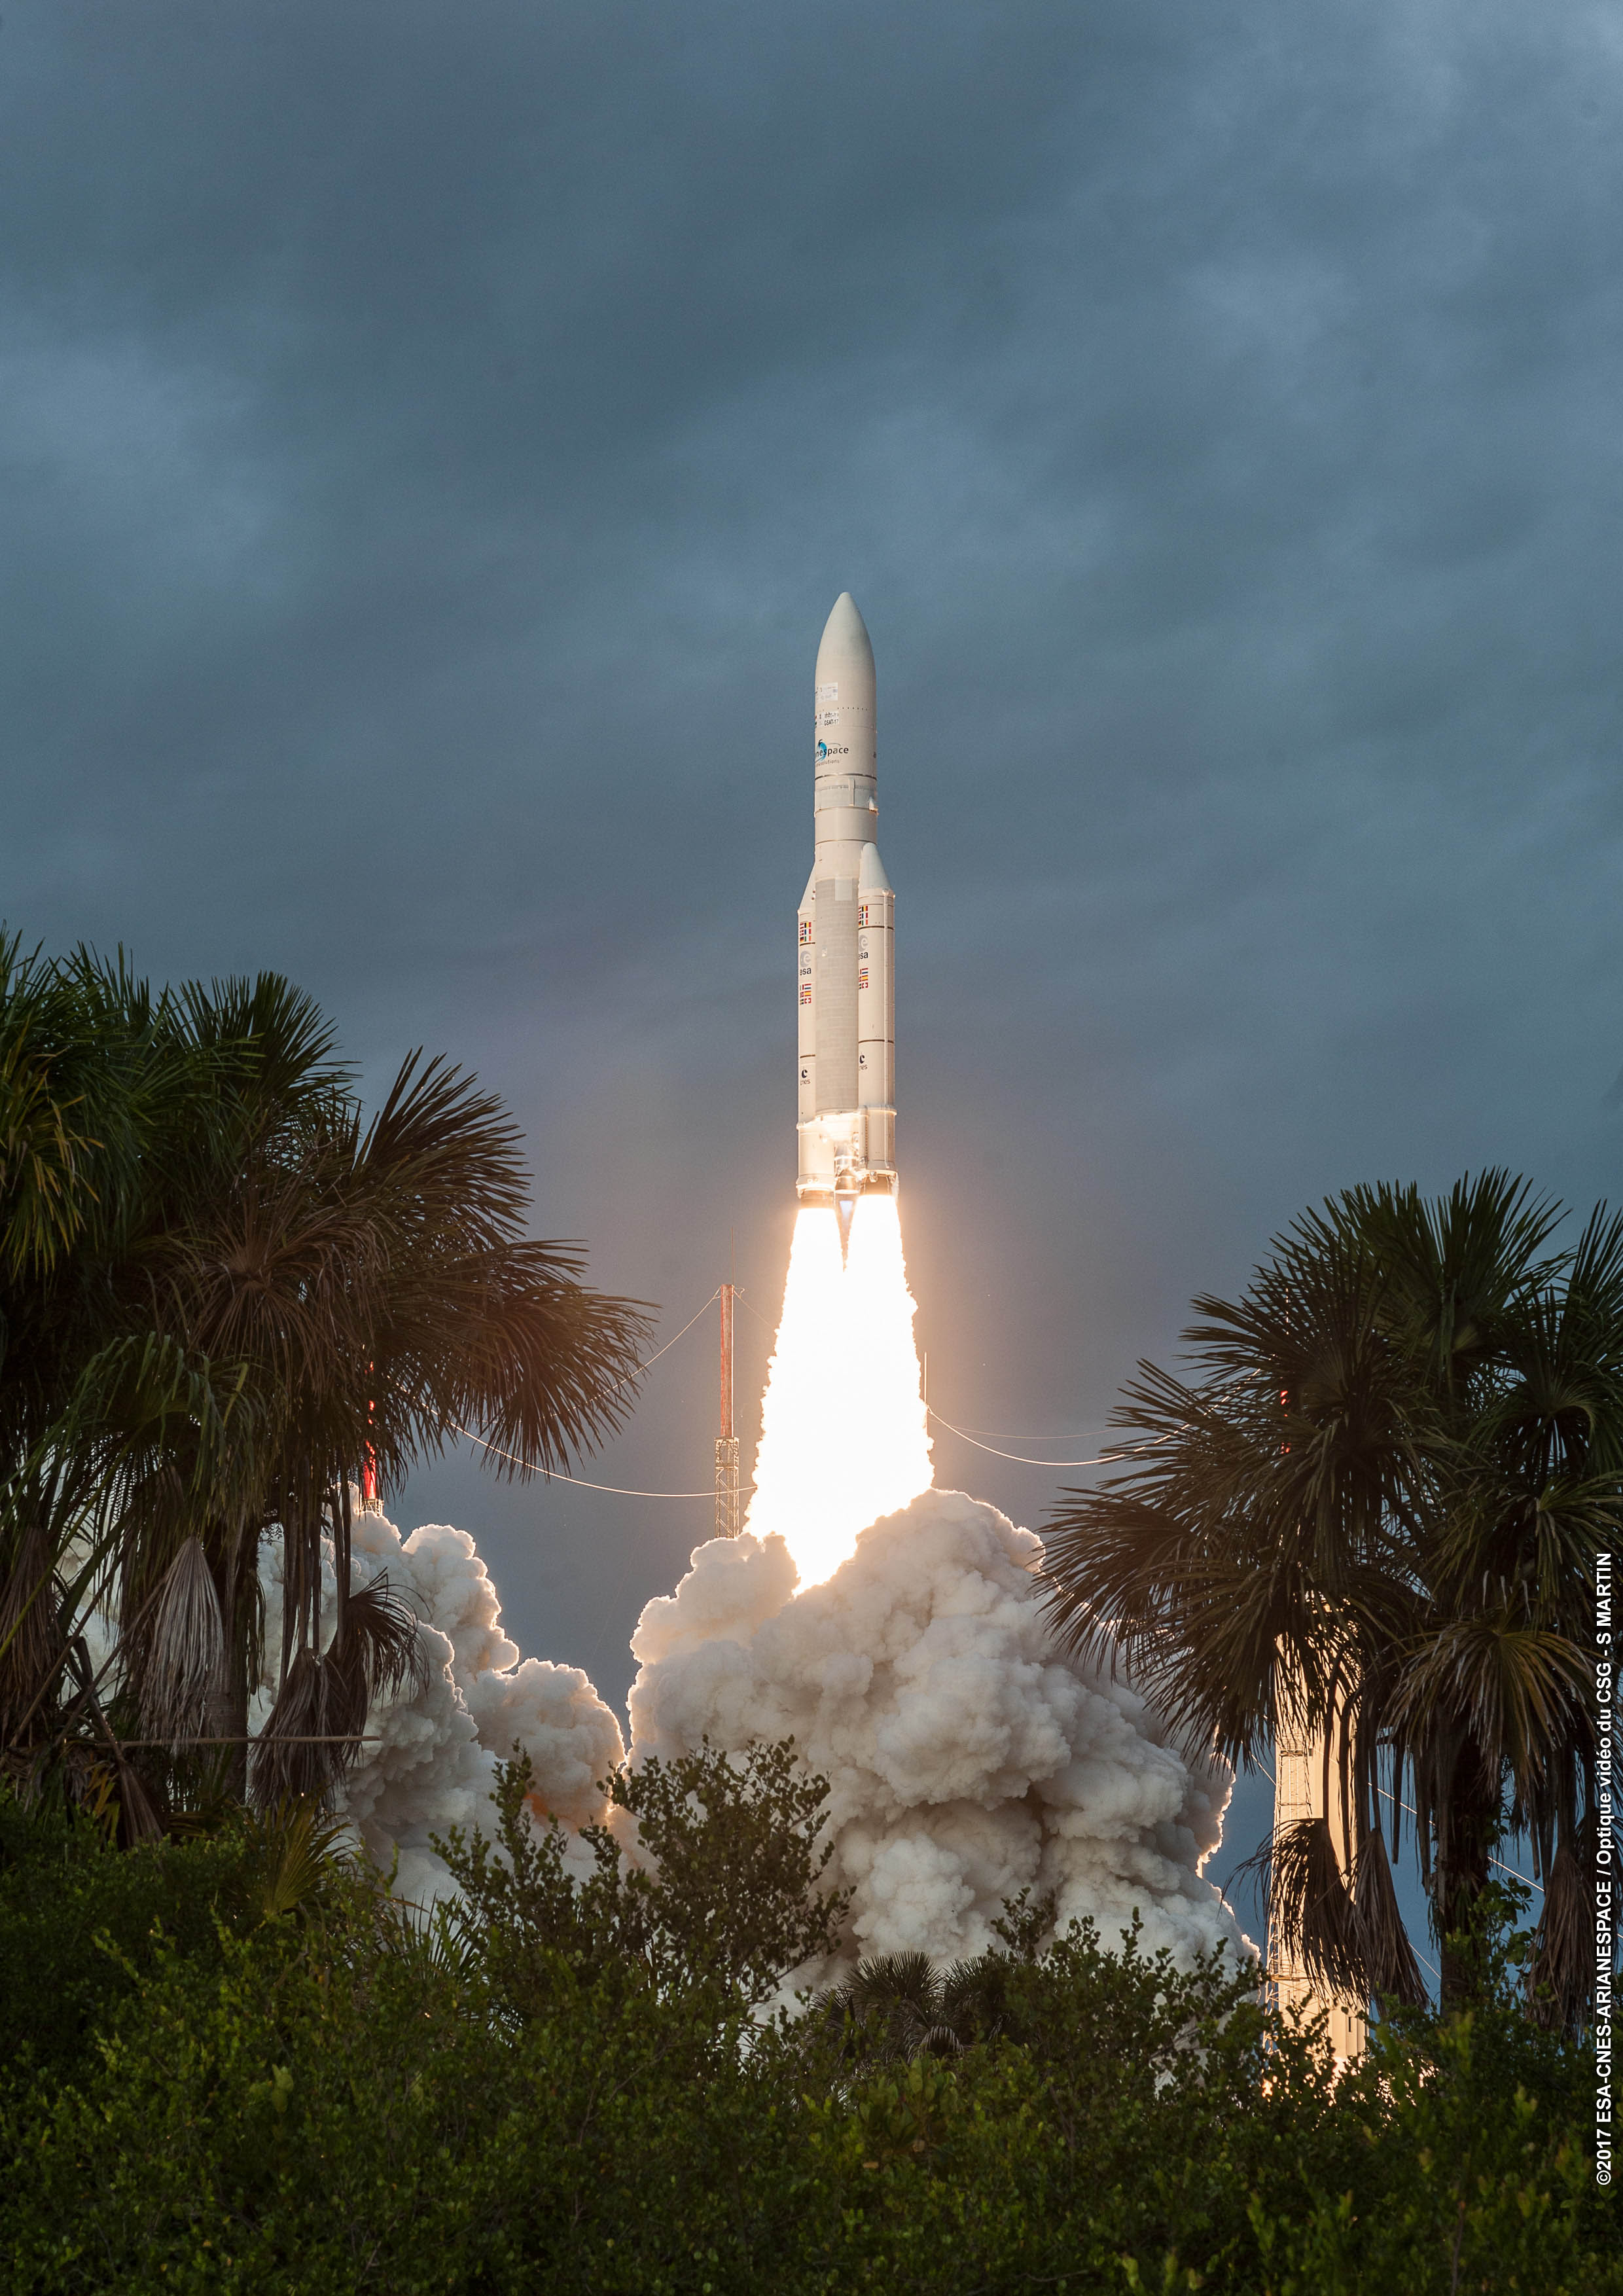 Incidente nello spazio per Ariane 5: satelliti vengono posizionati in modo errato